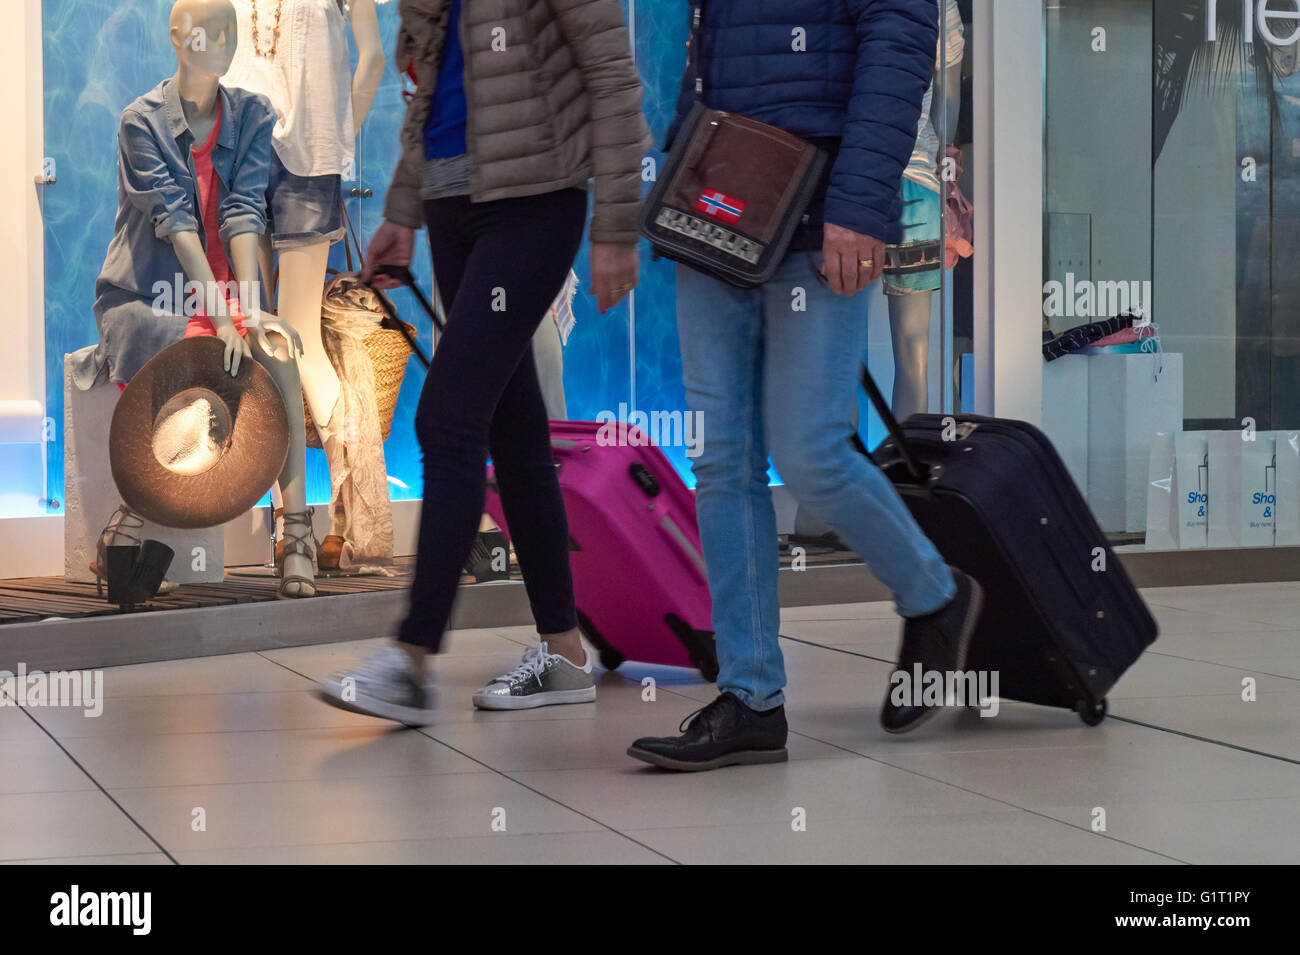 Les passagers à l'aéroport de Stansted, Angleterre Royaume-Uni UK Banque D'Images